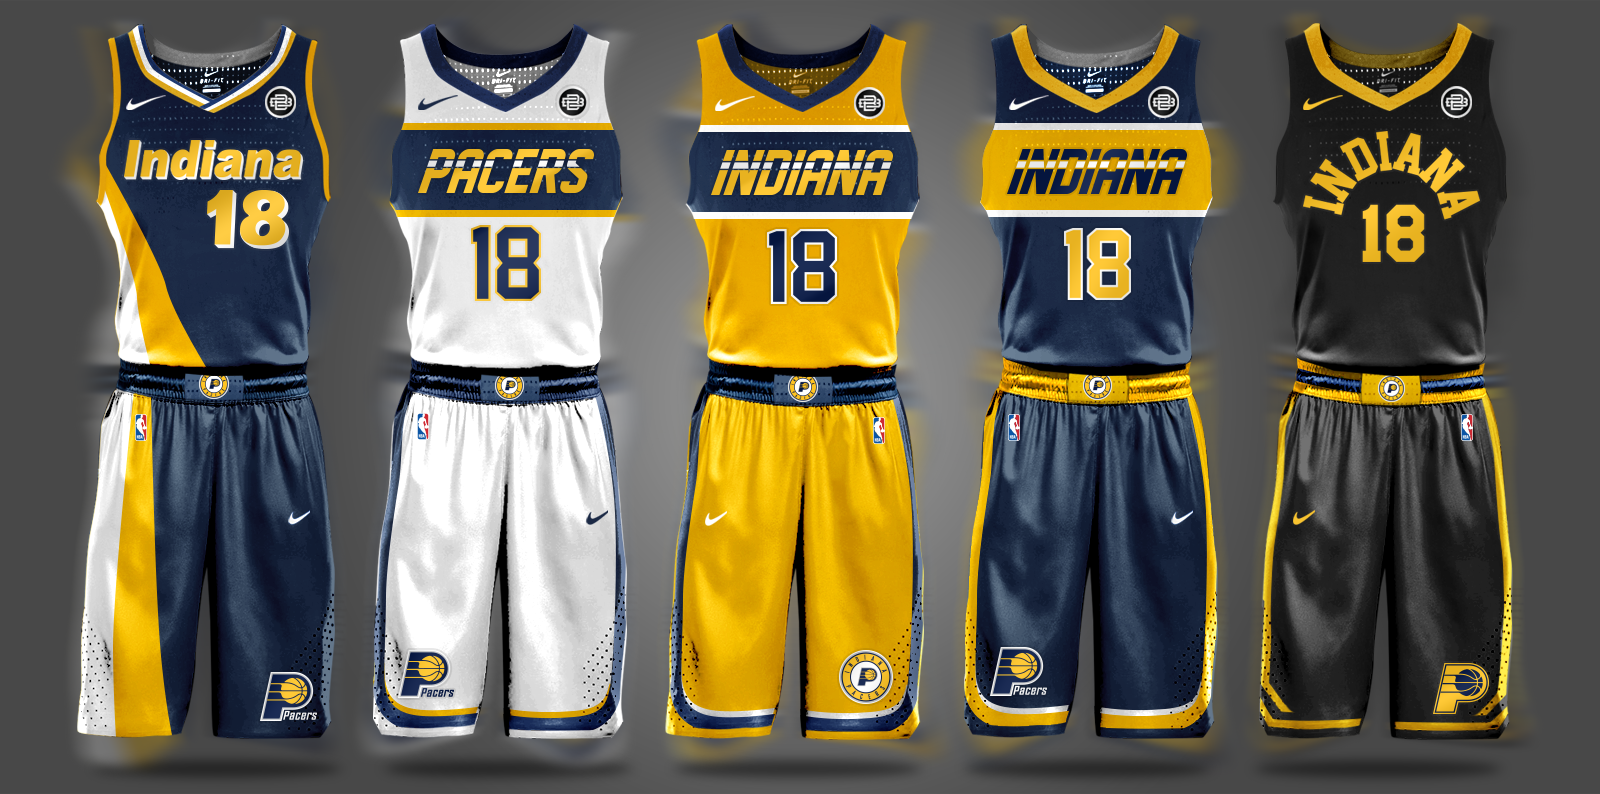 new nba basketball jersey design 2018